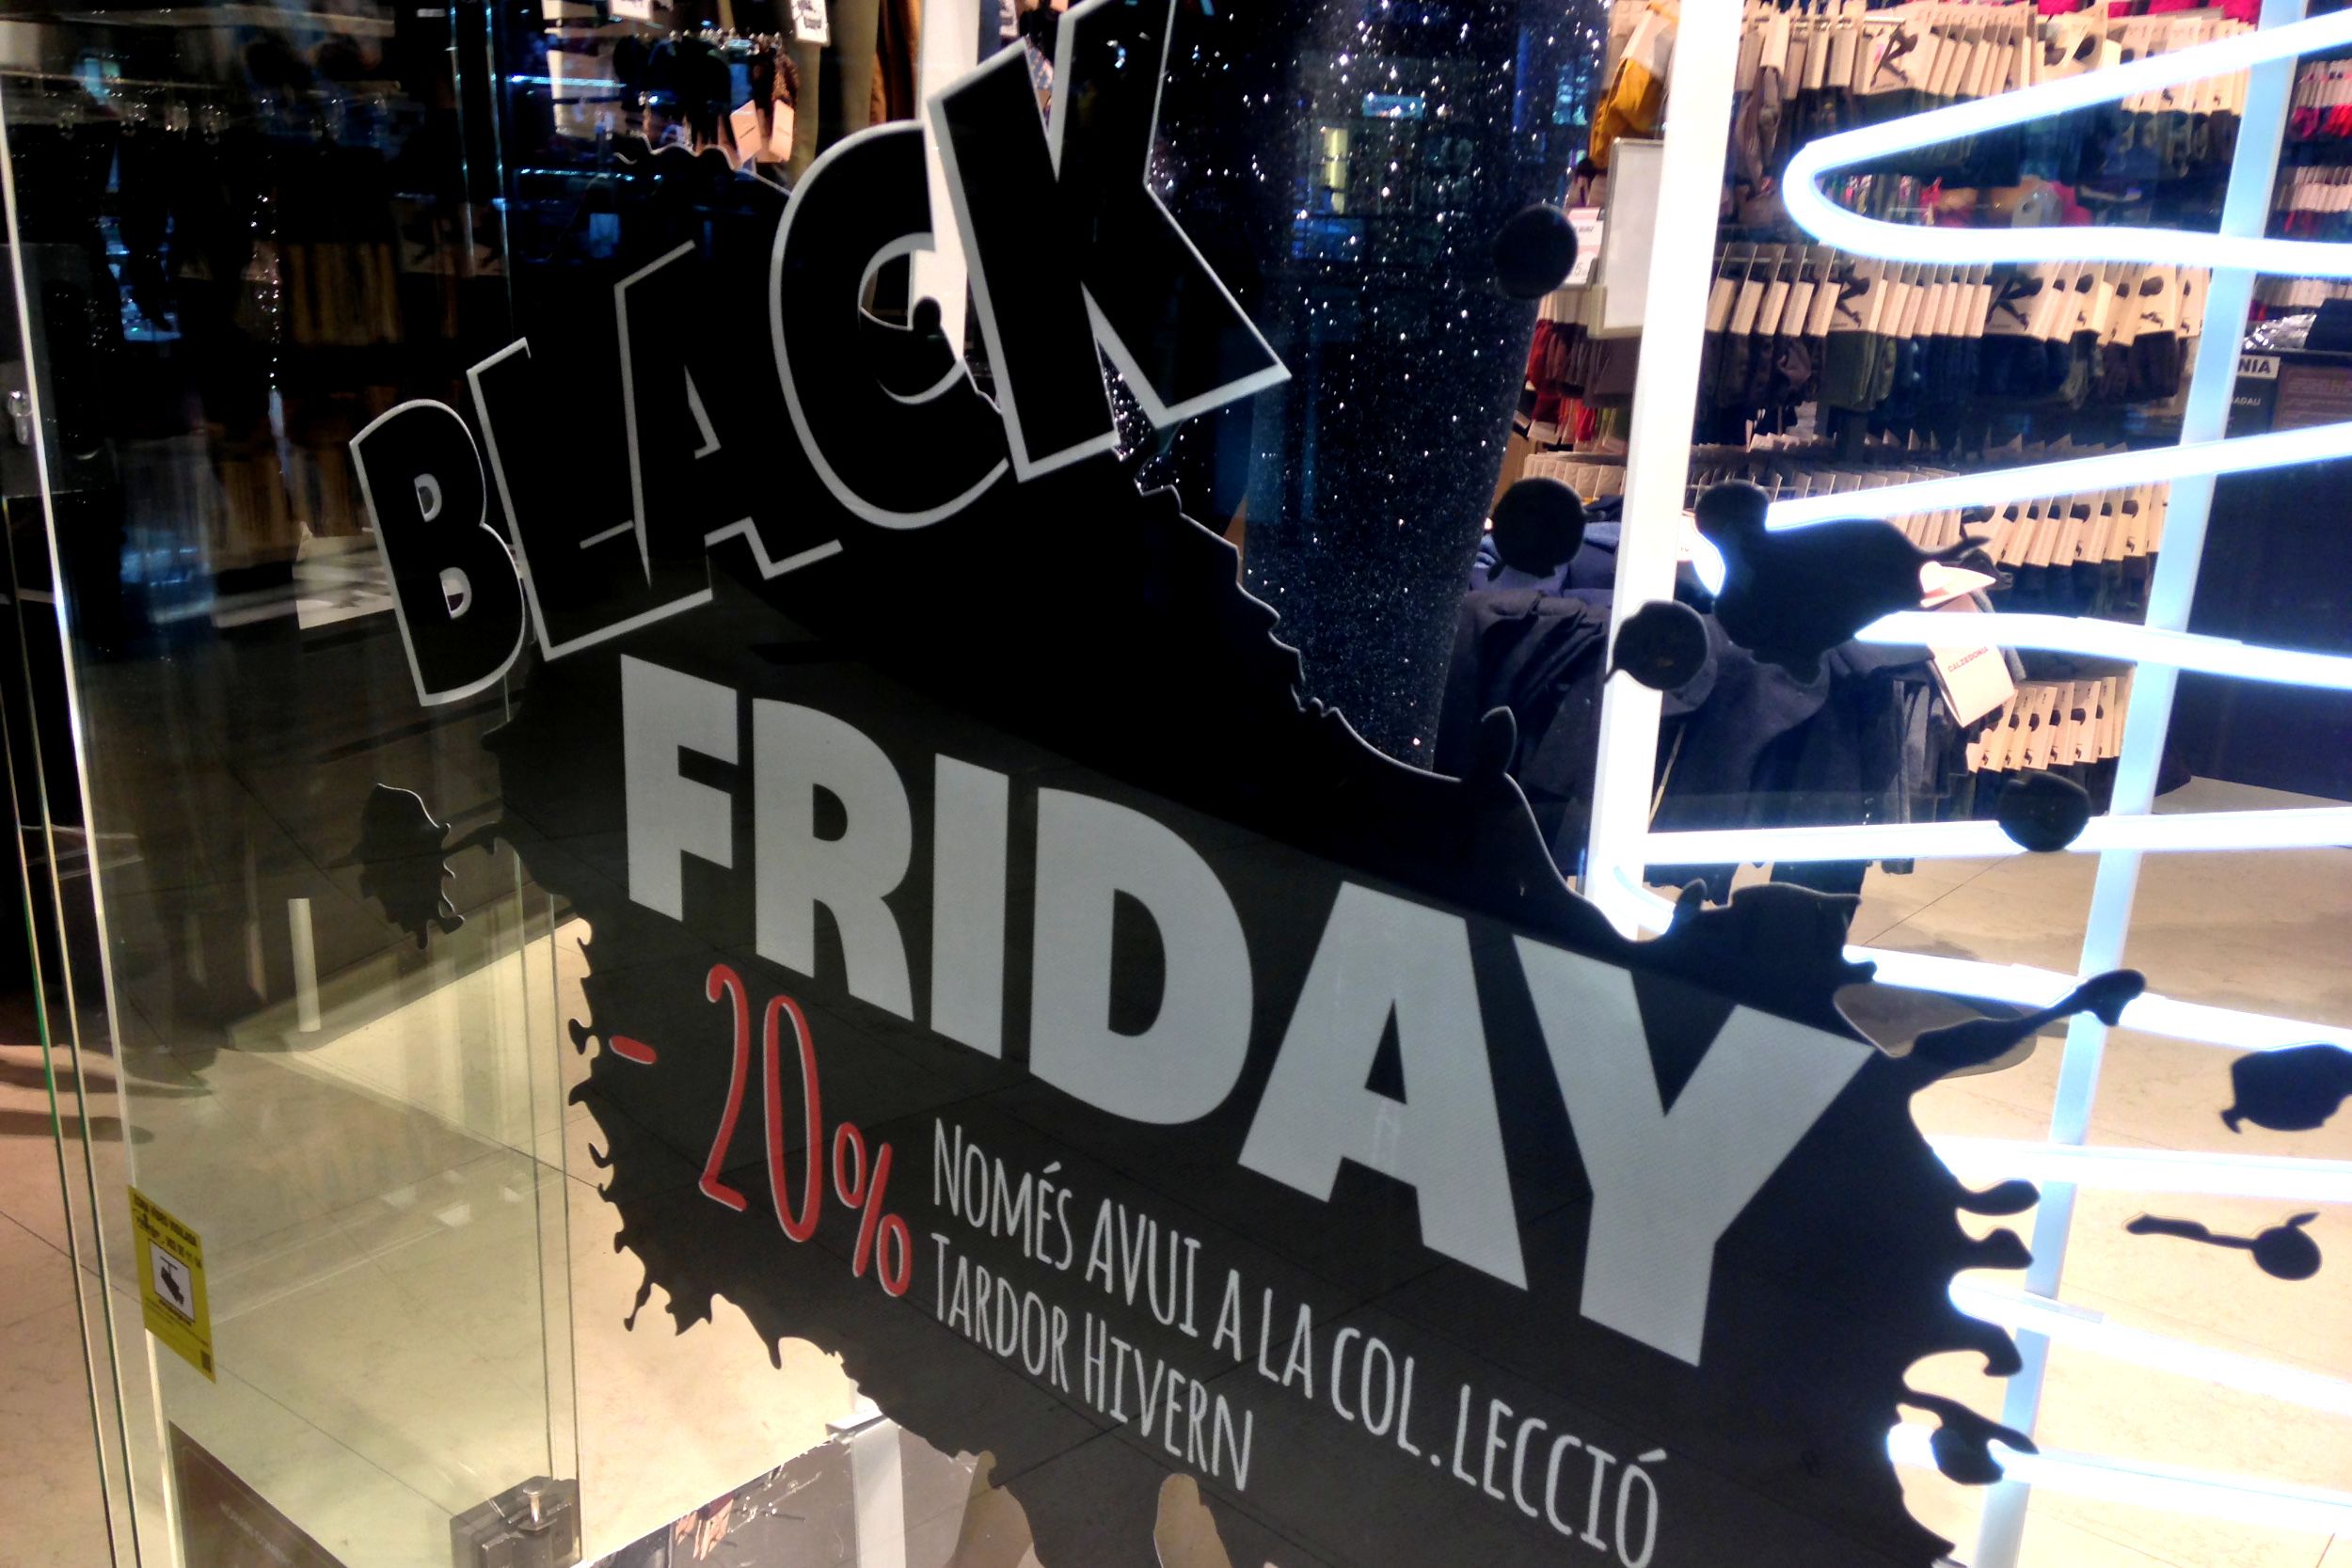 Mola: "El que no es compra al Black Friday, es compra al Cyber Monday"